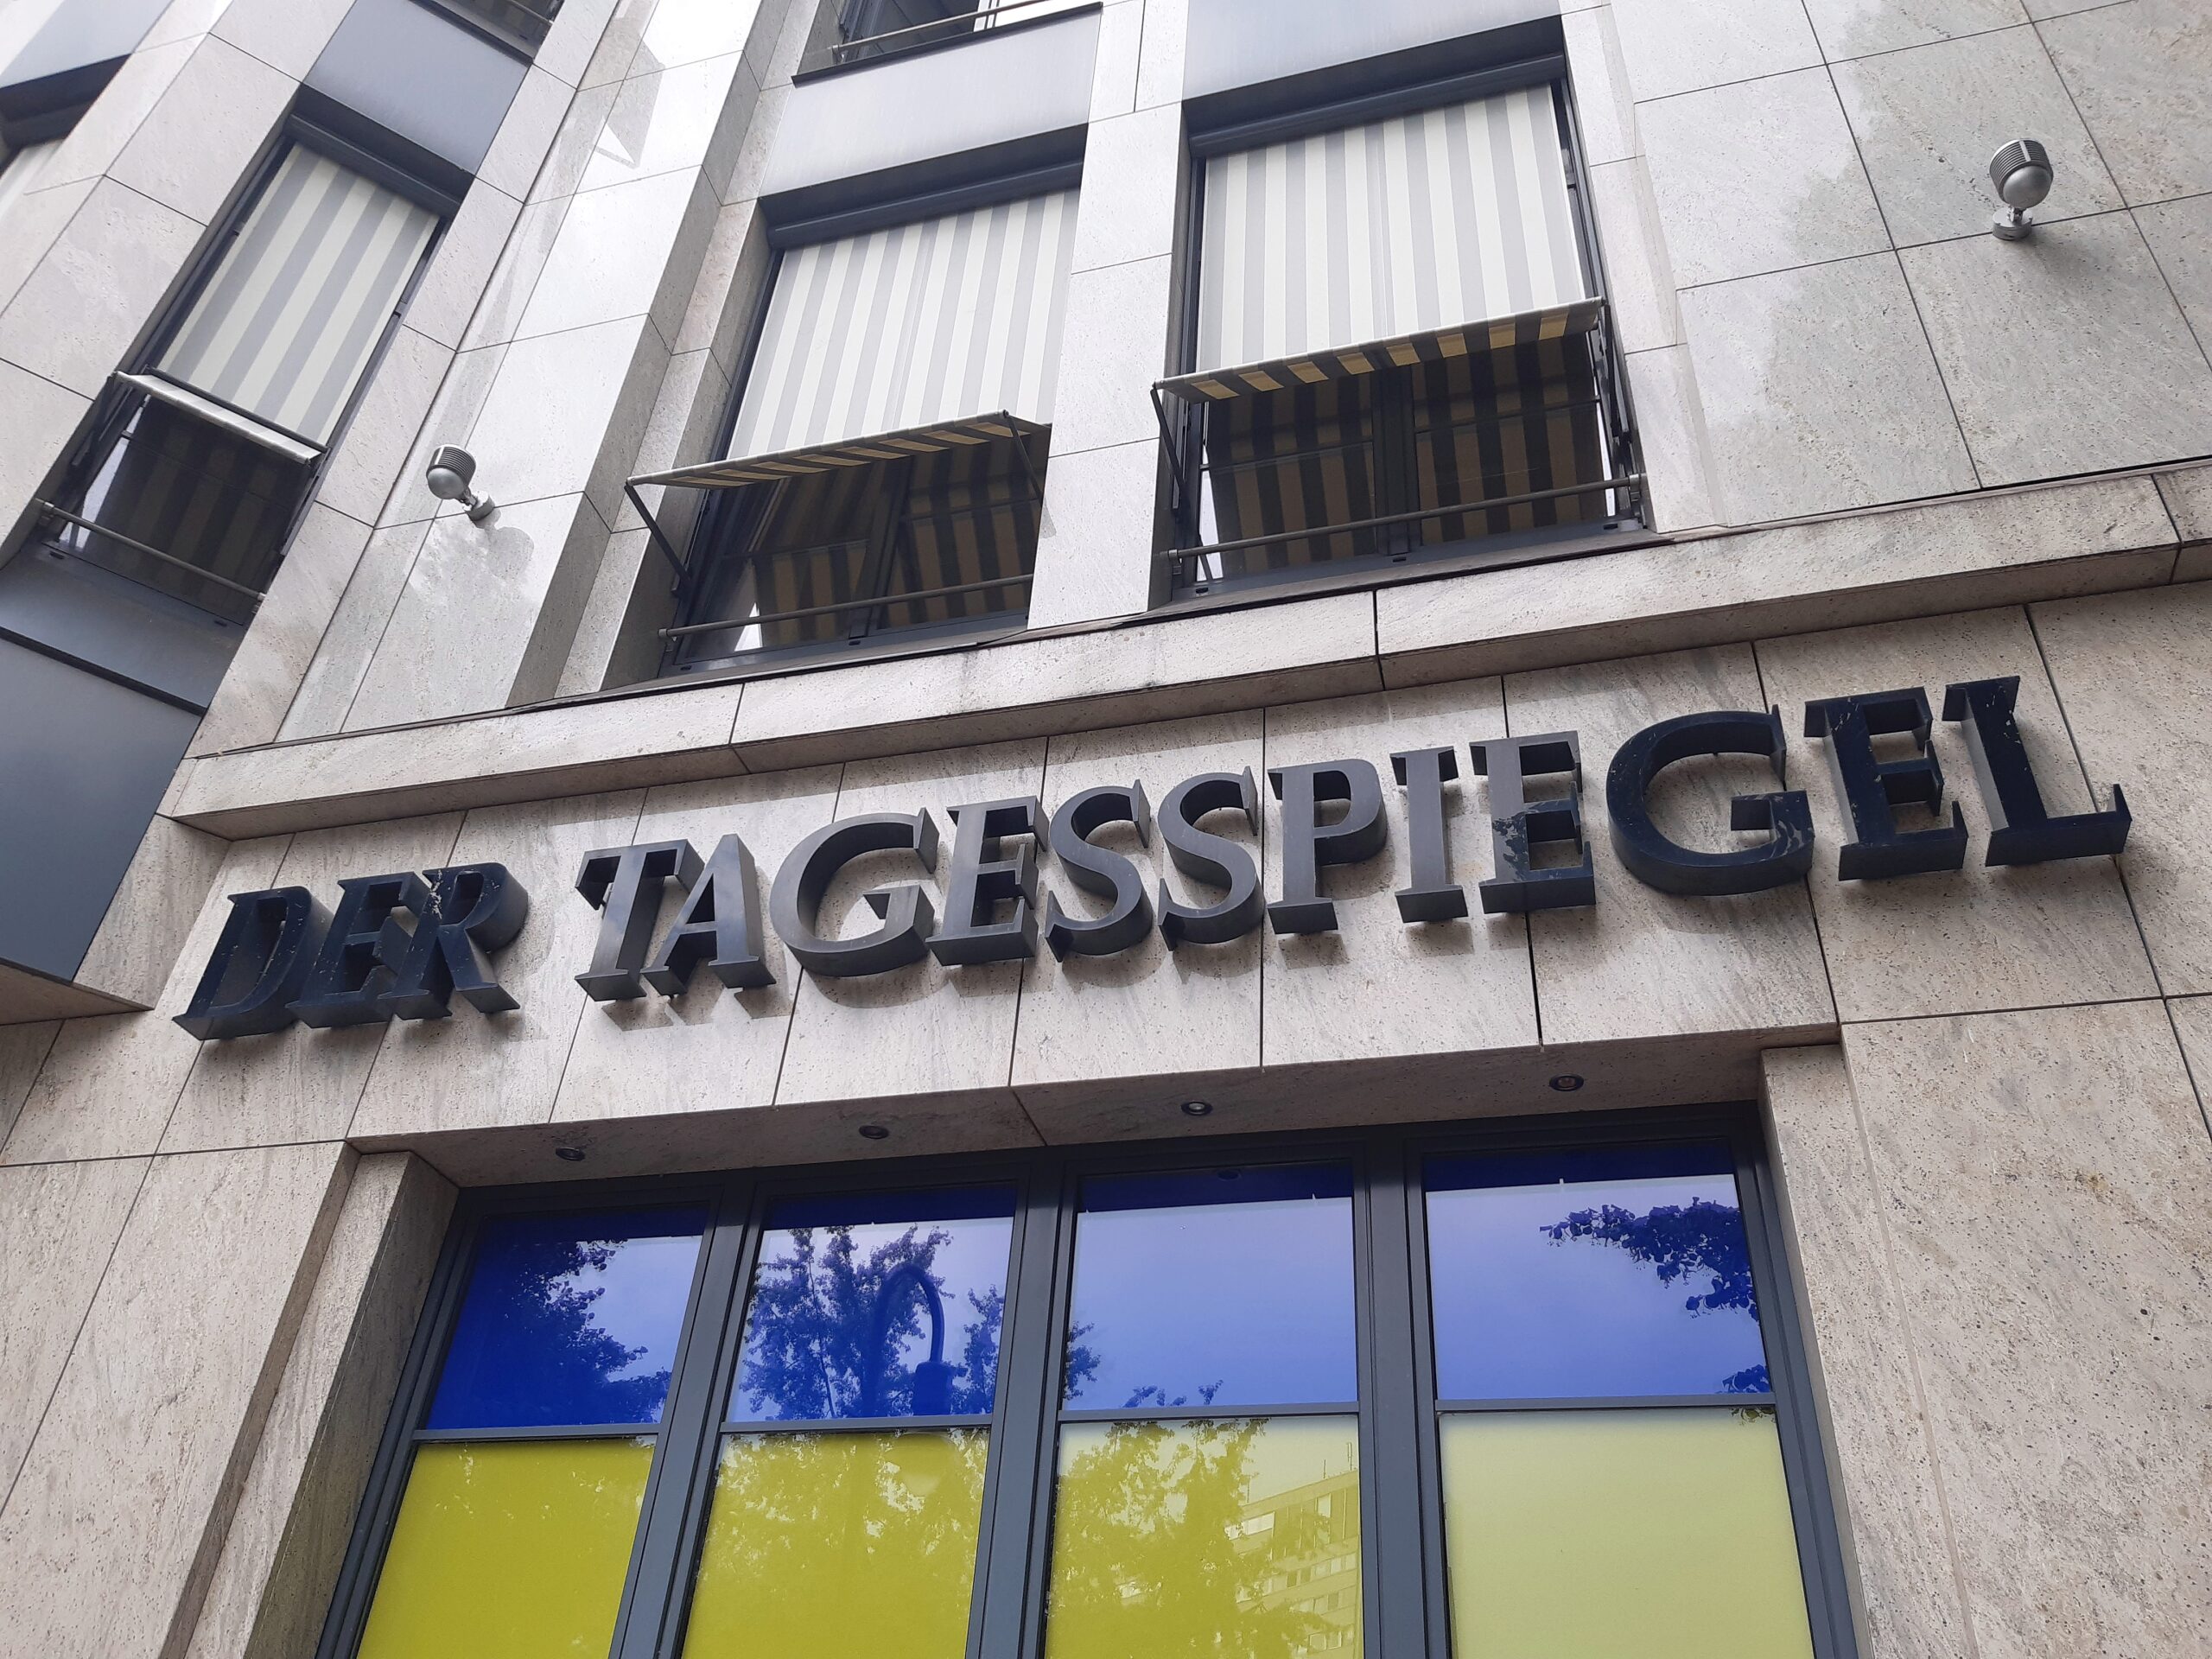 Tagesspiegel-Redaktion in Berlin